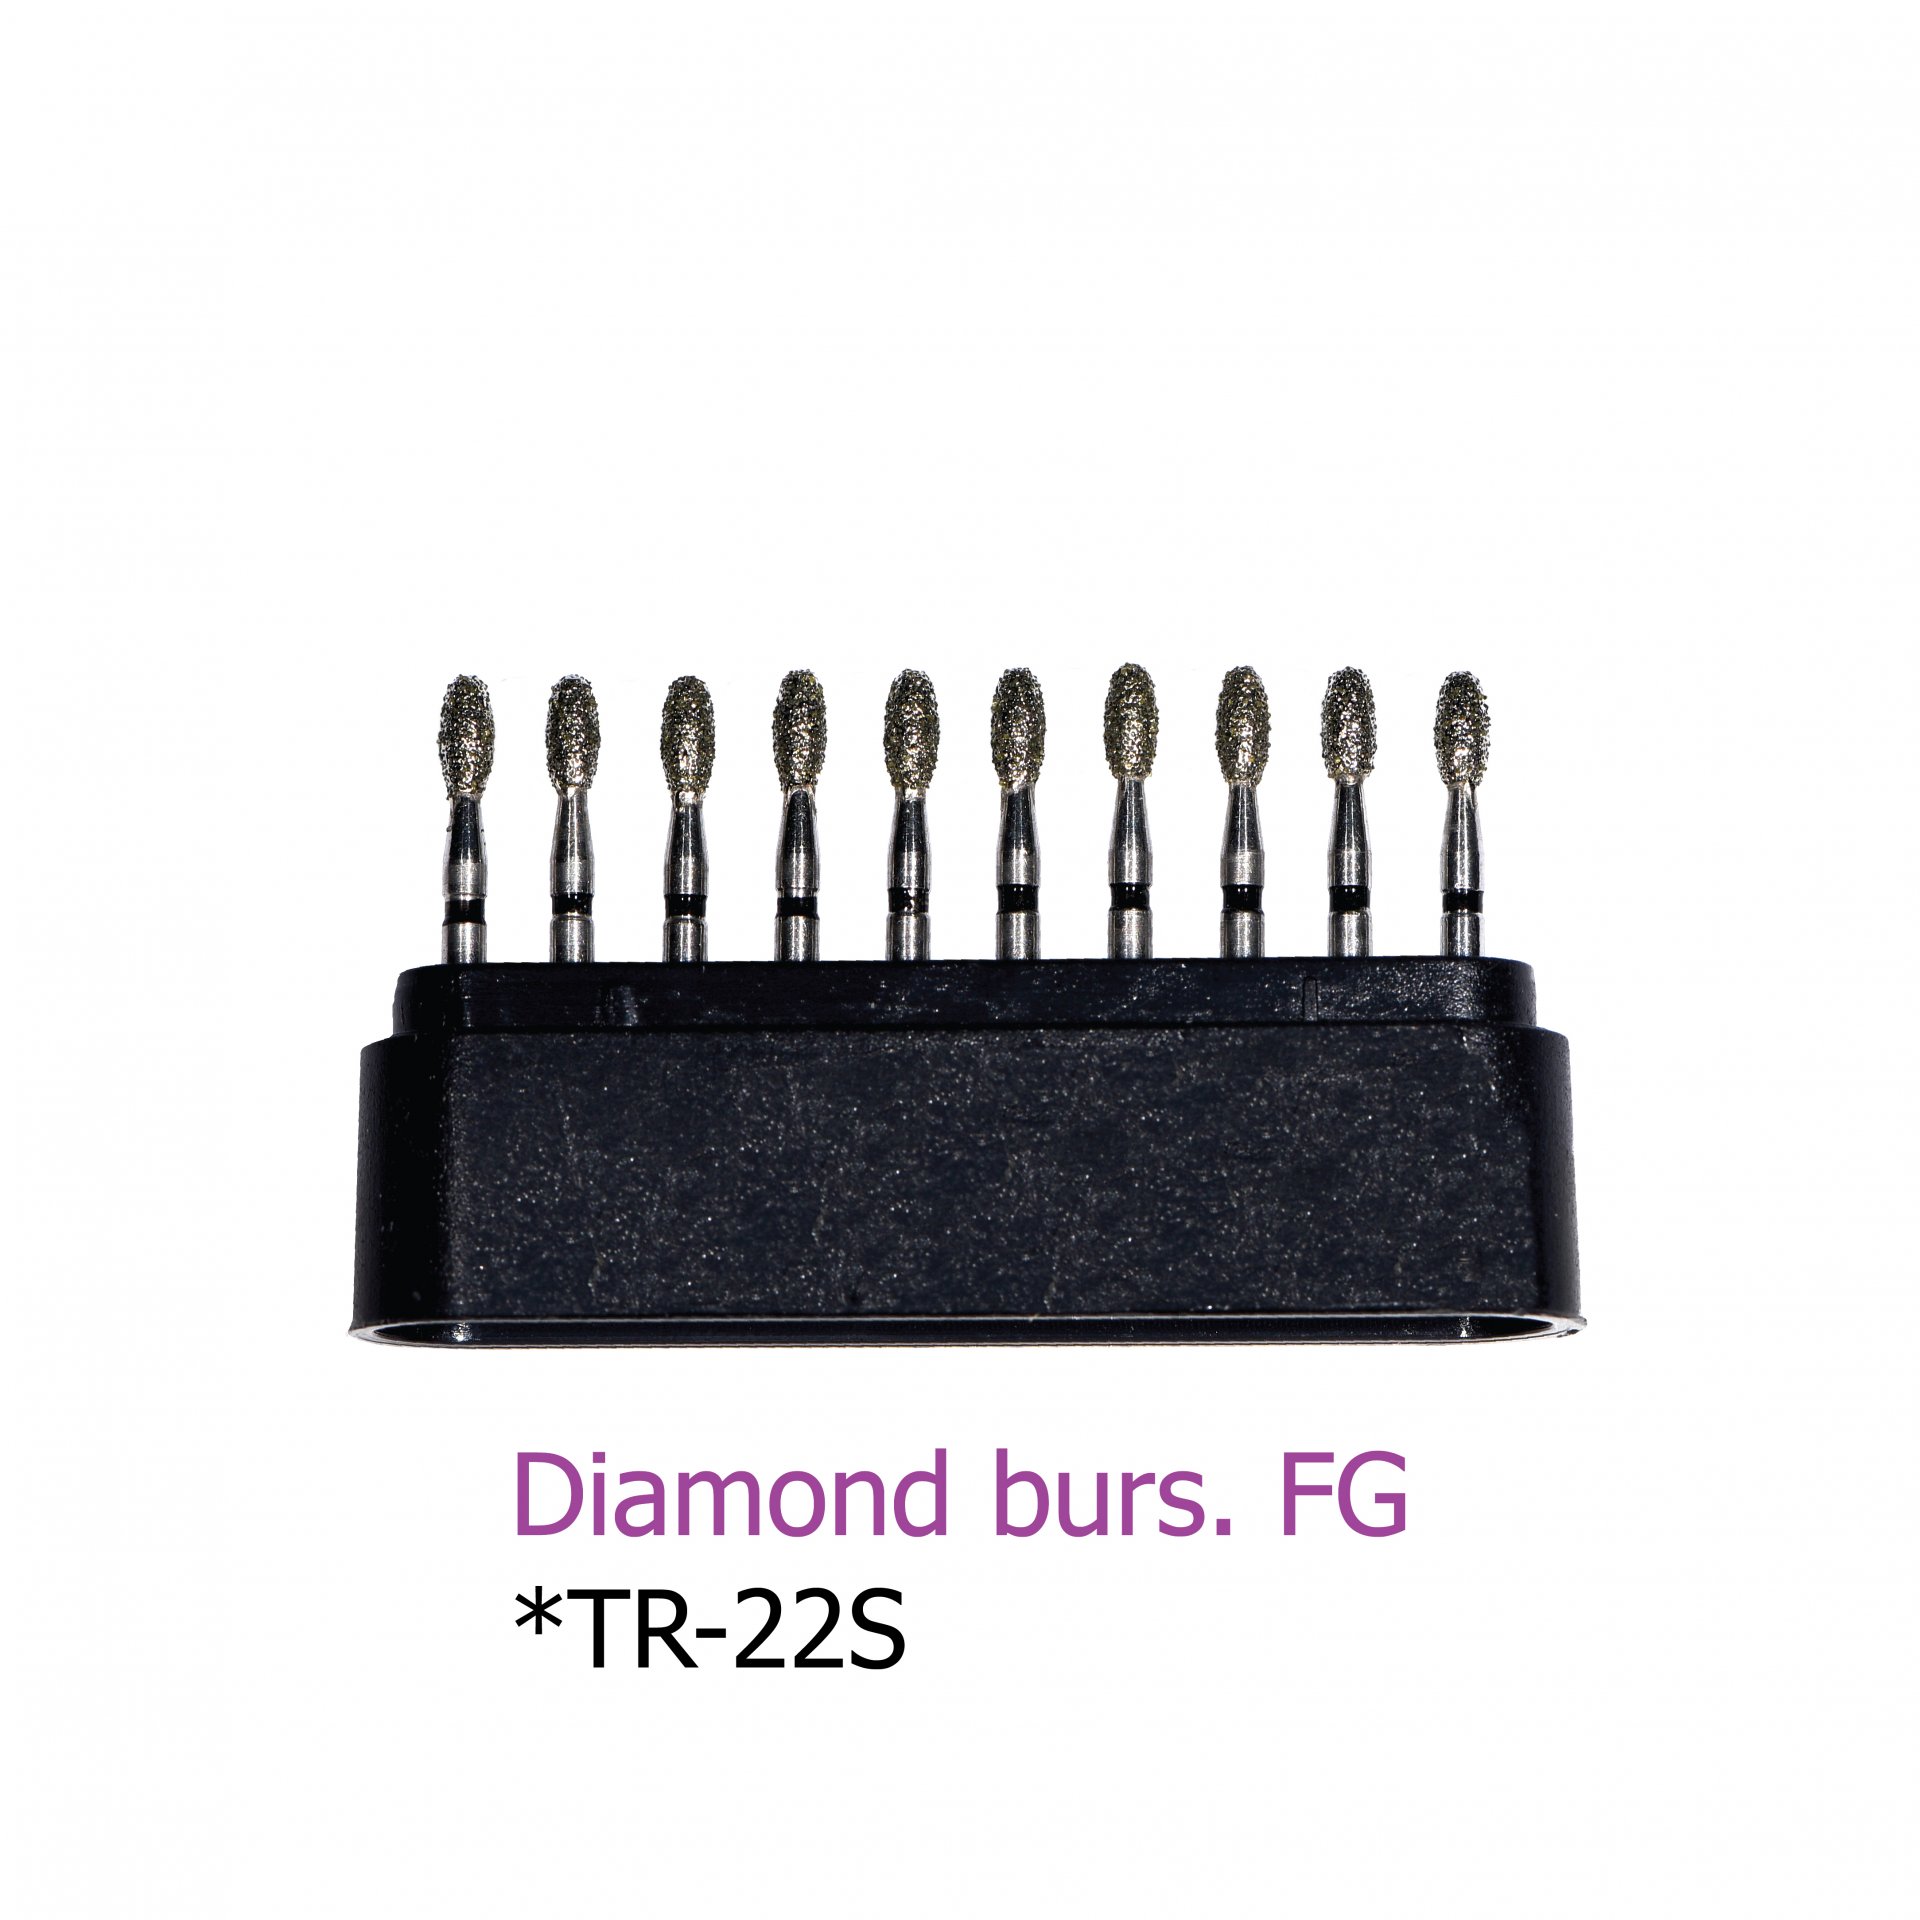 Diamond burs. FG *TR-22S